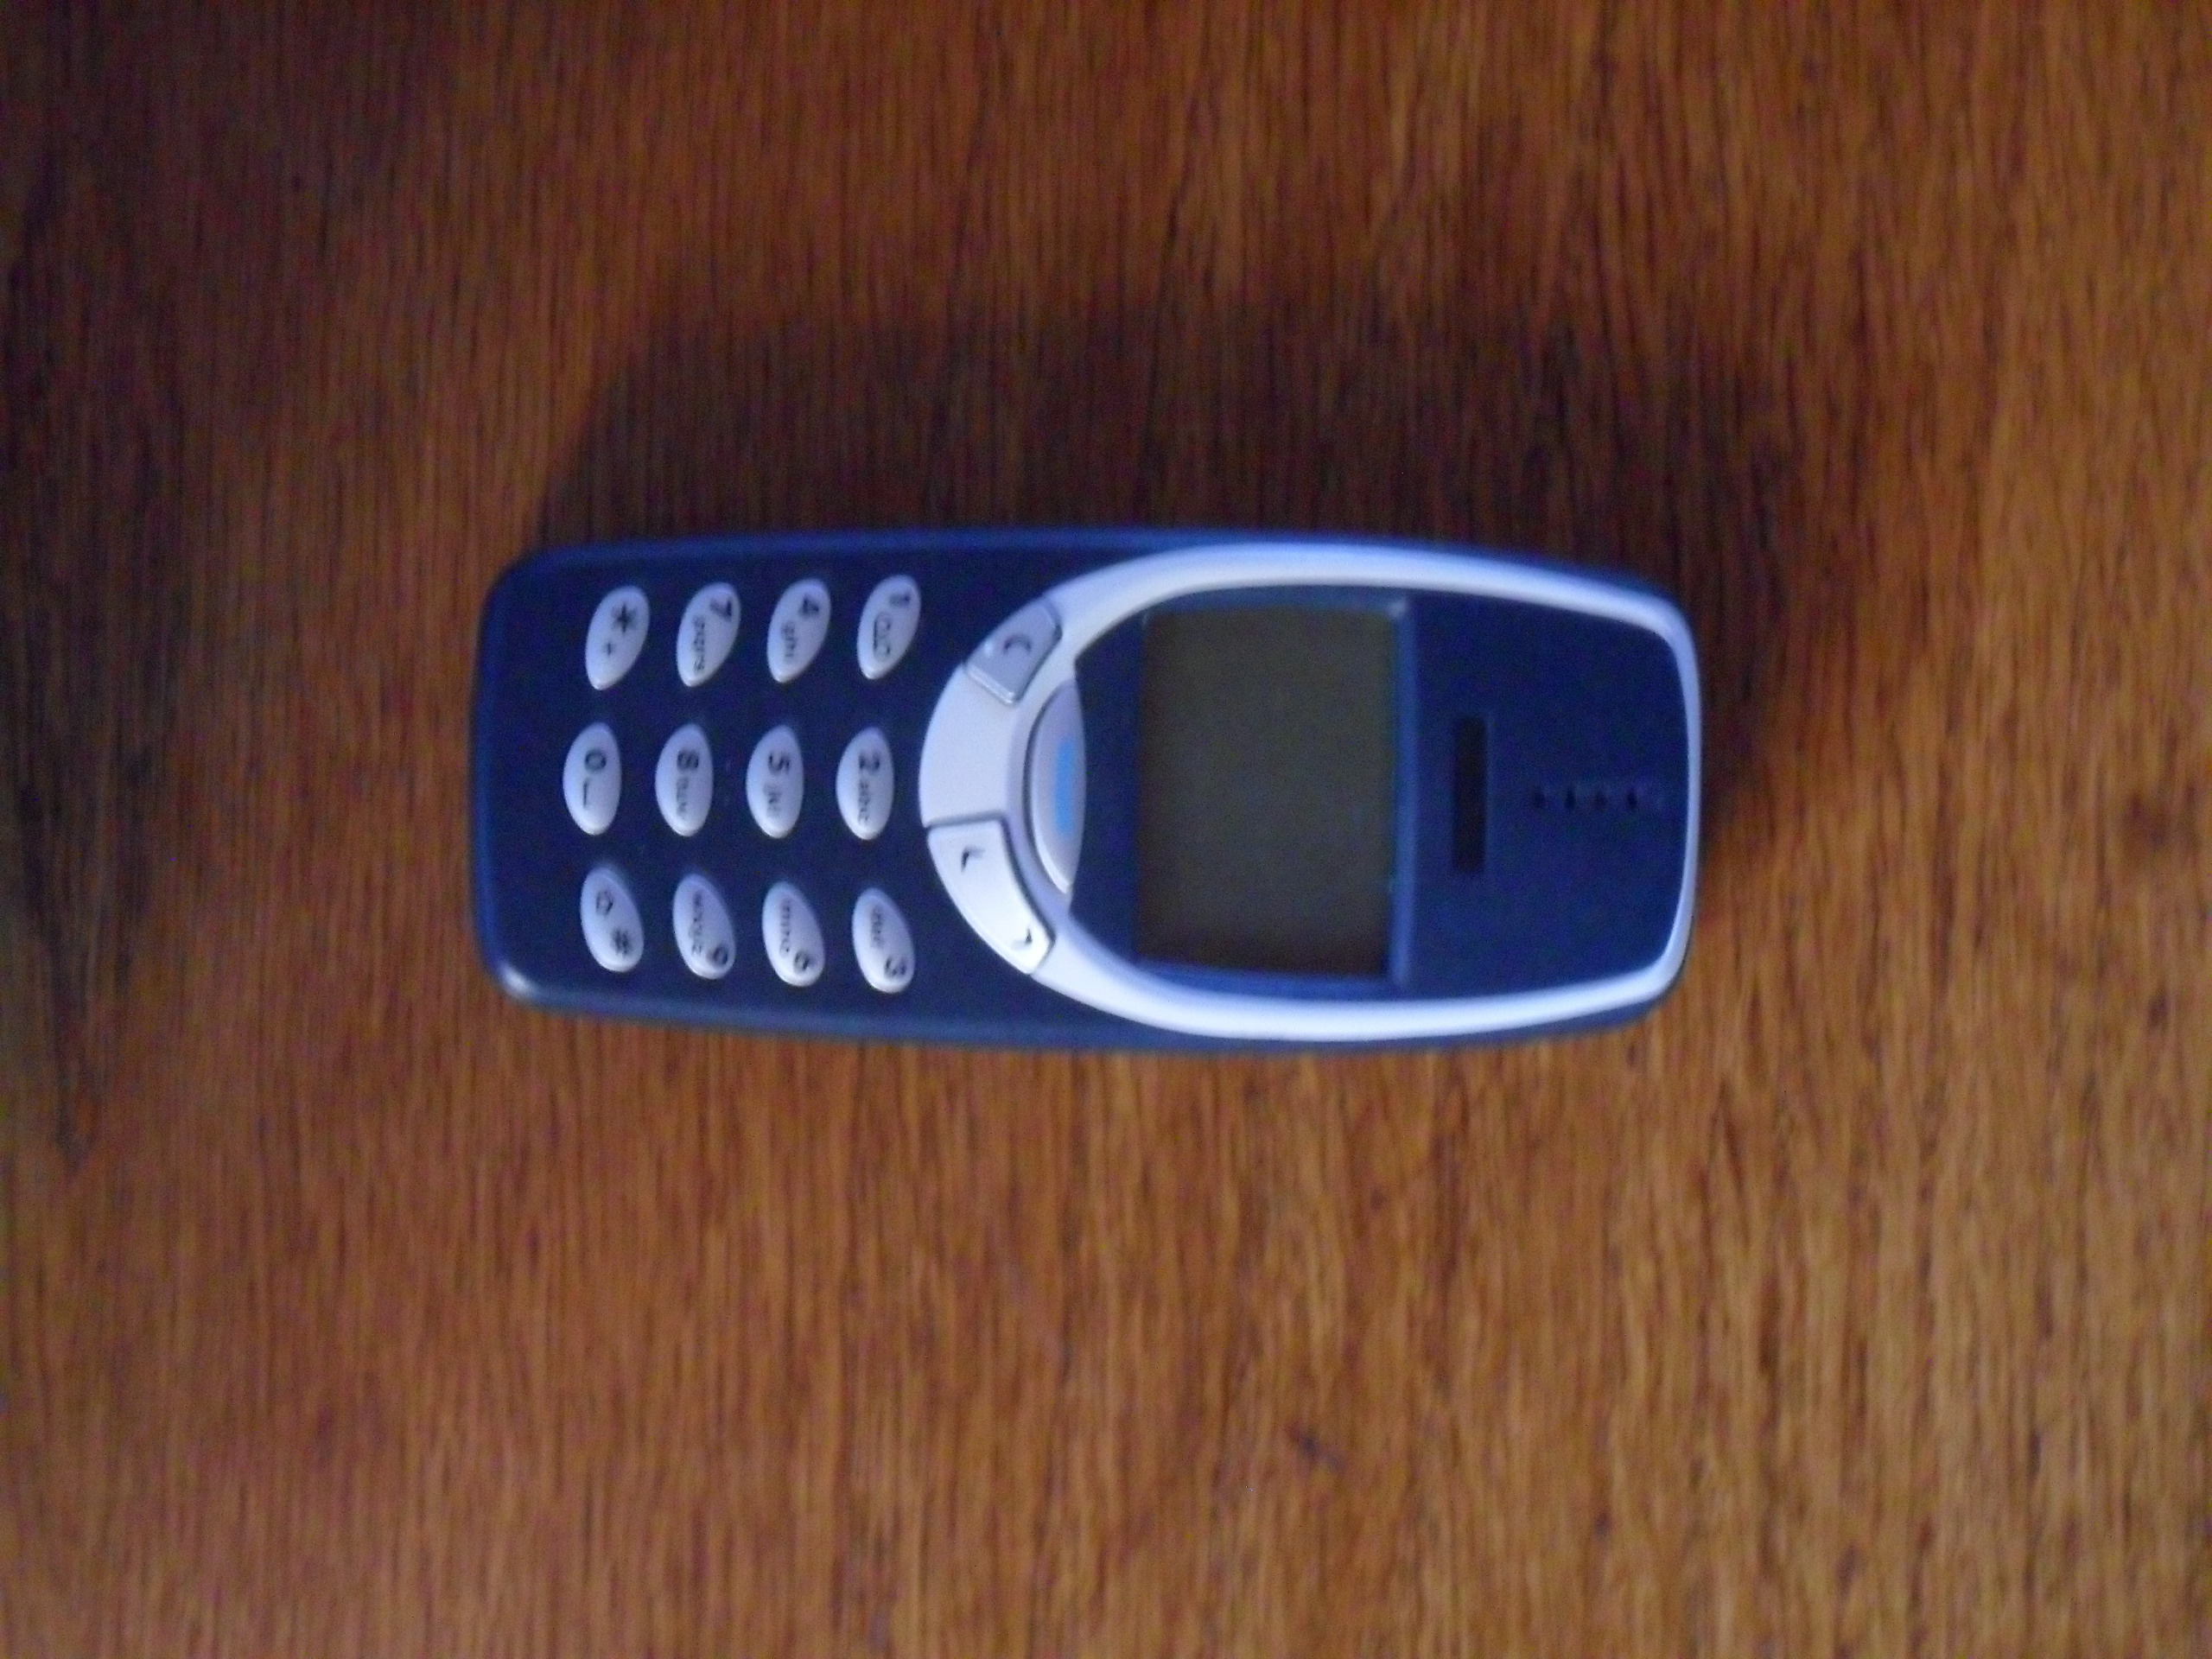 Le retour du Nokia 3310